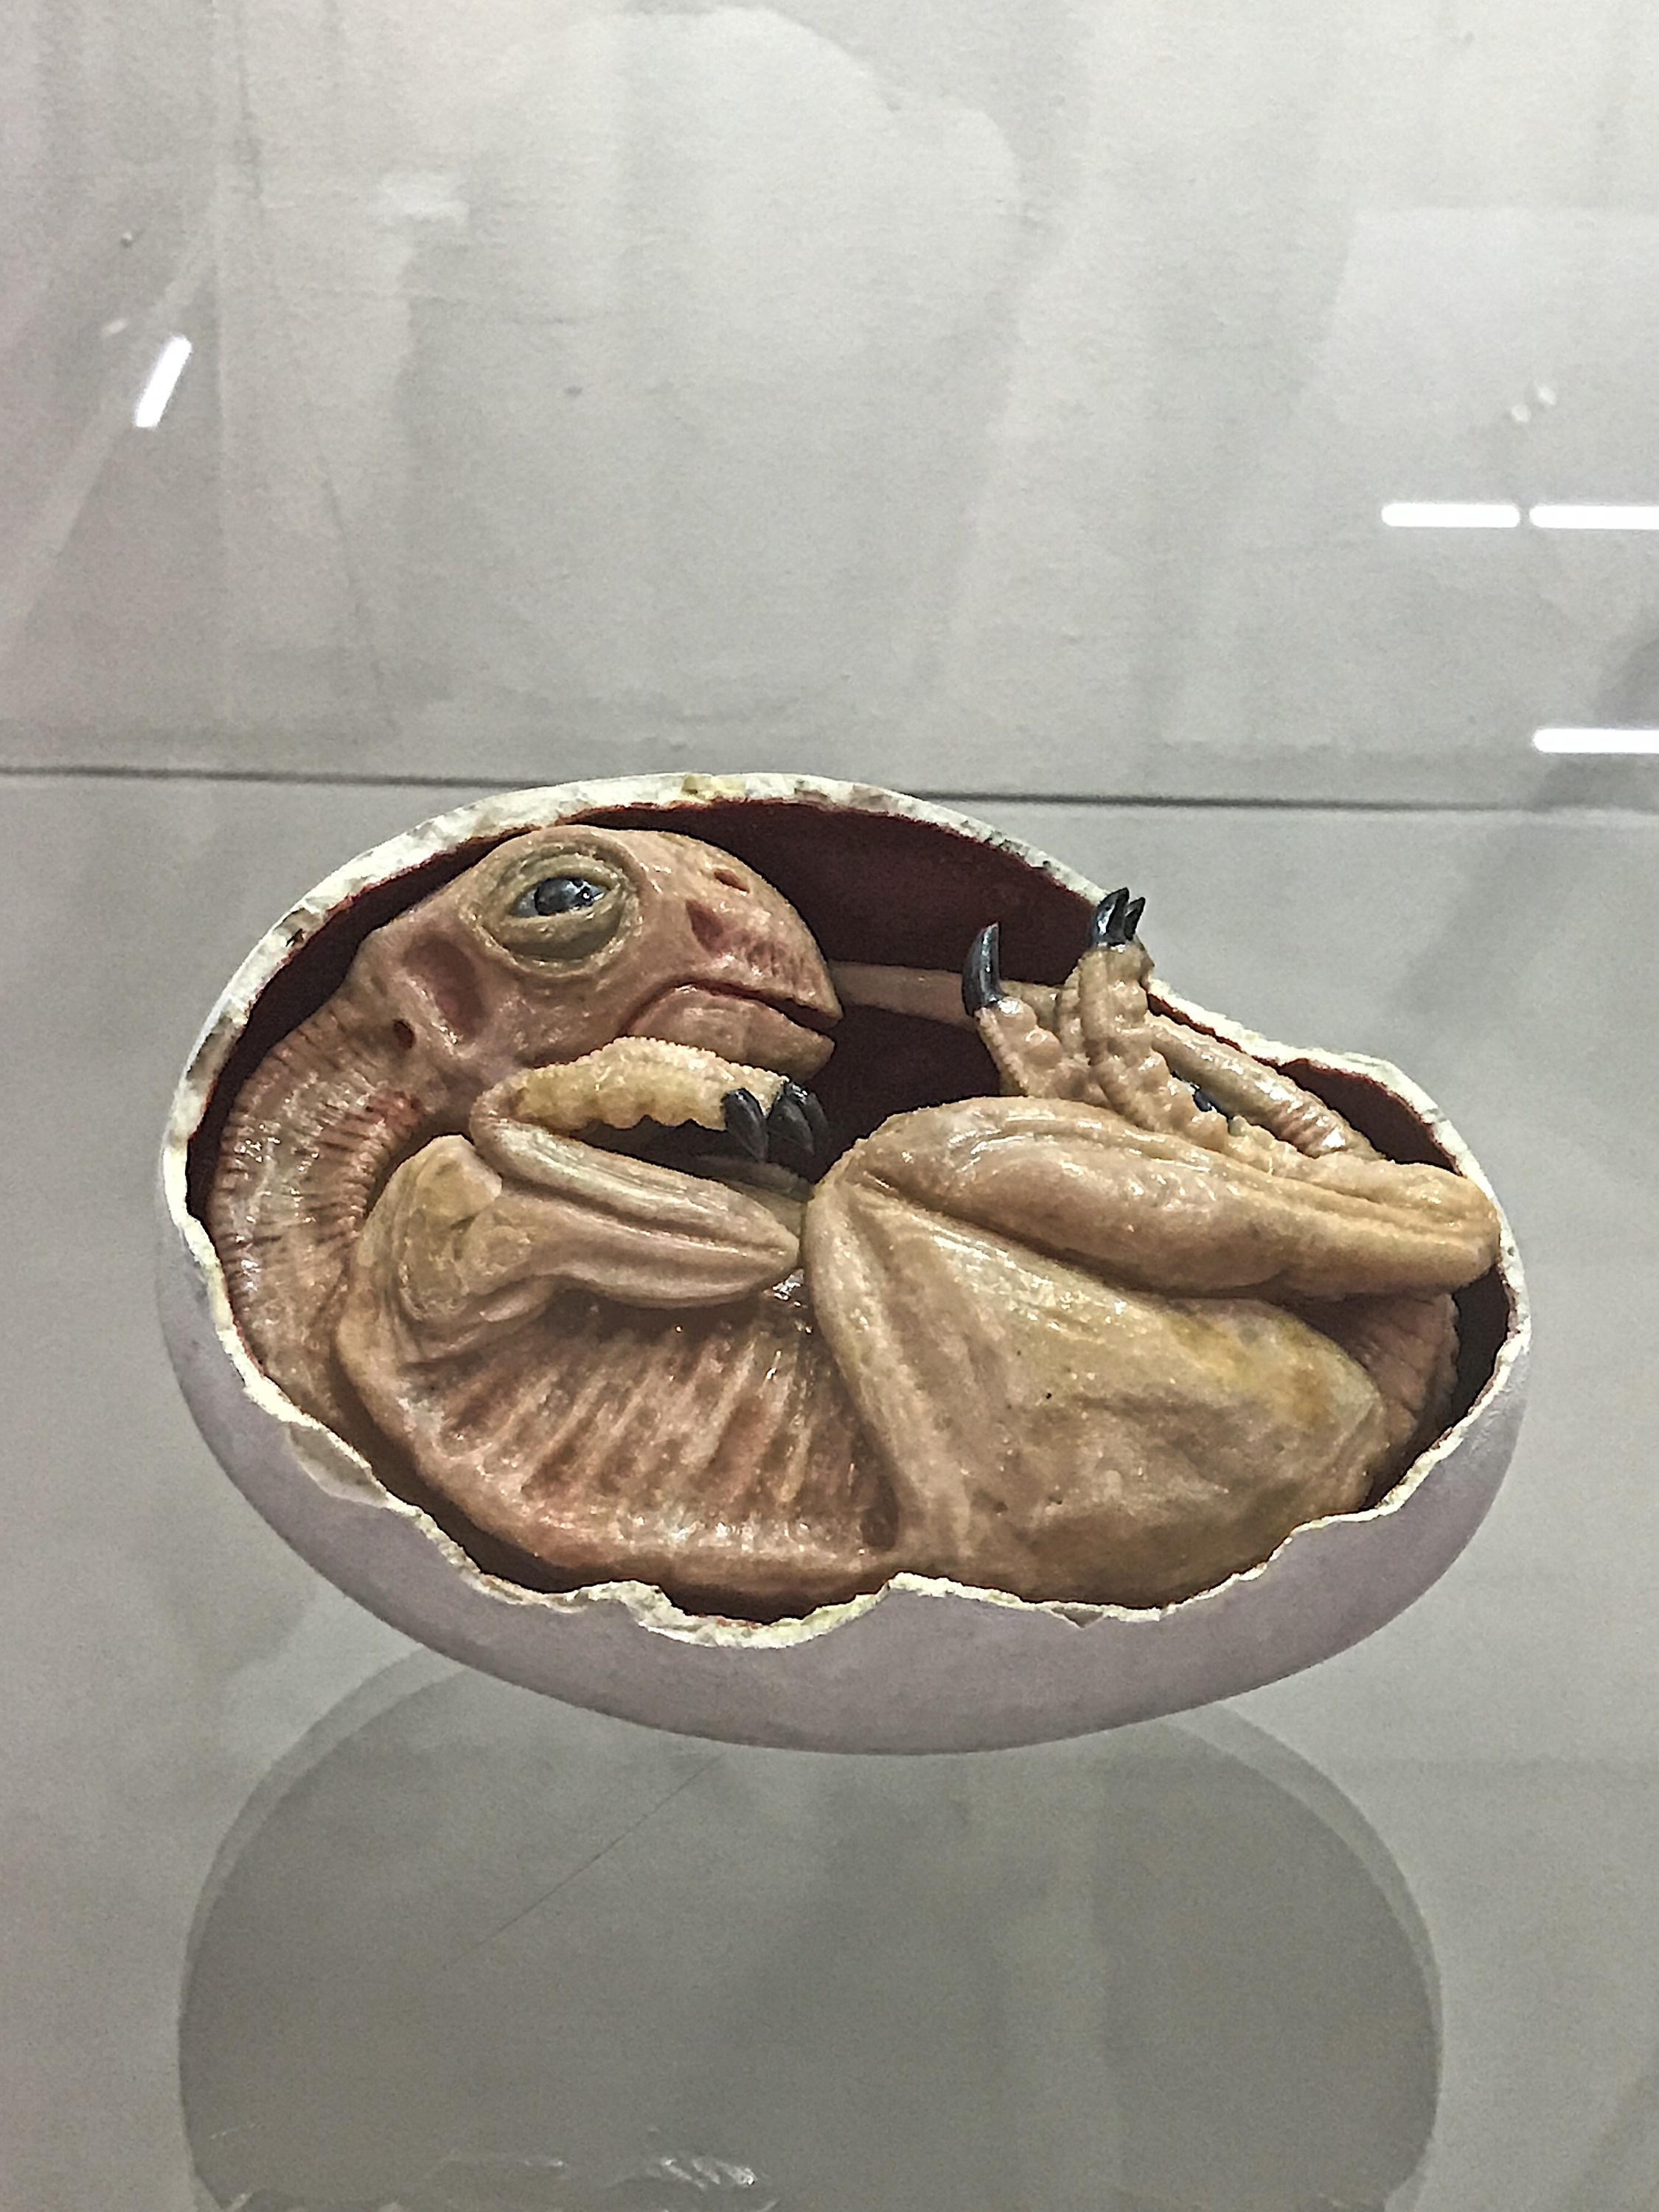 Еще немного пугающего. Это модель эмбриона овираптора, которую подарил музею признанный специалист по вымершим акулам Урала и Казахстана